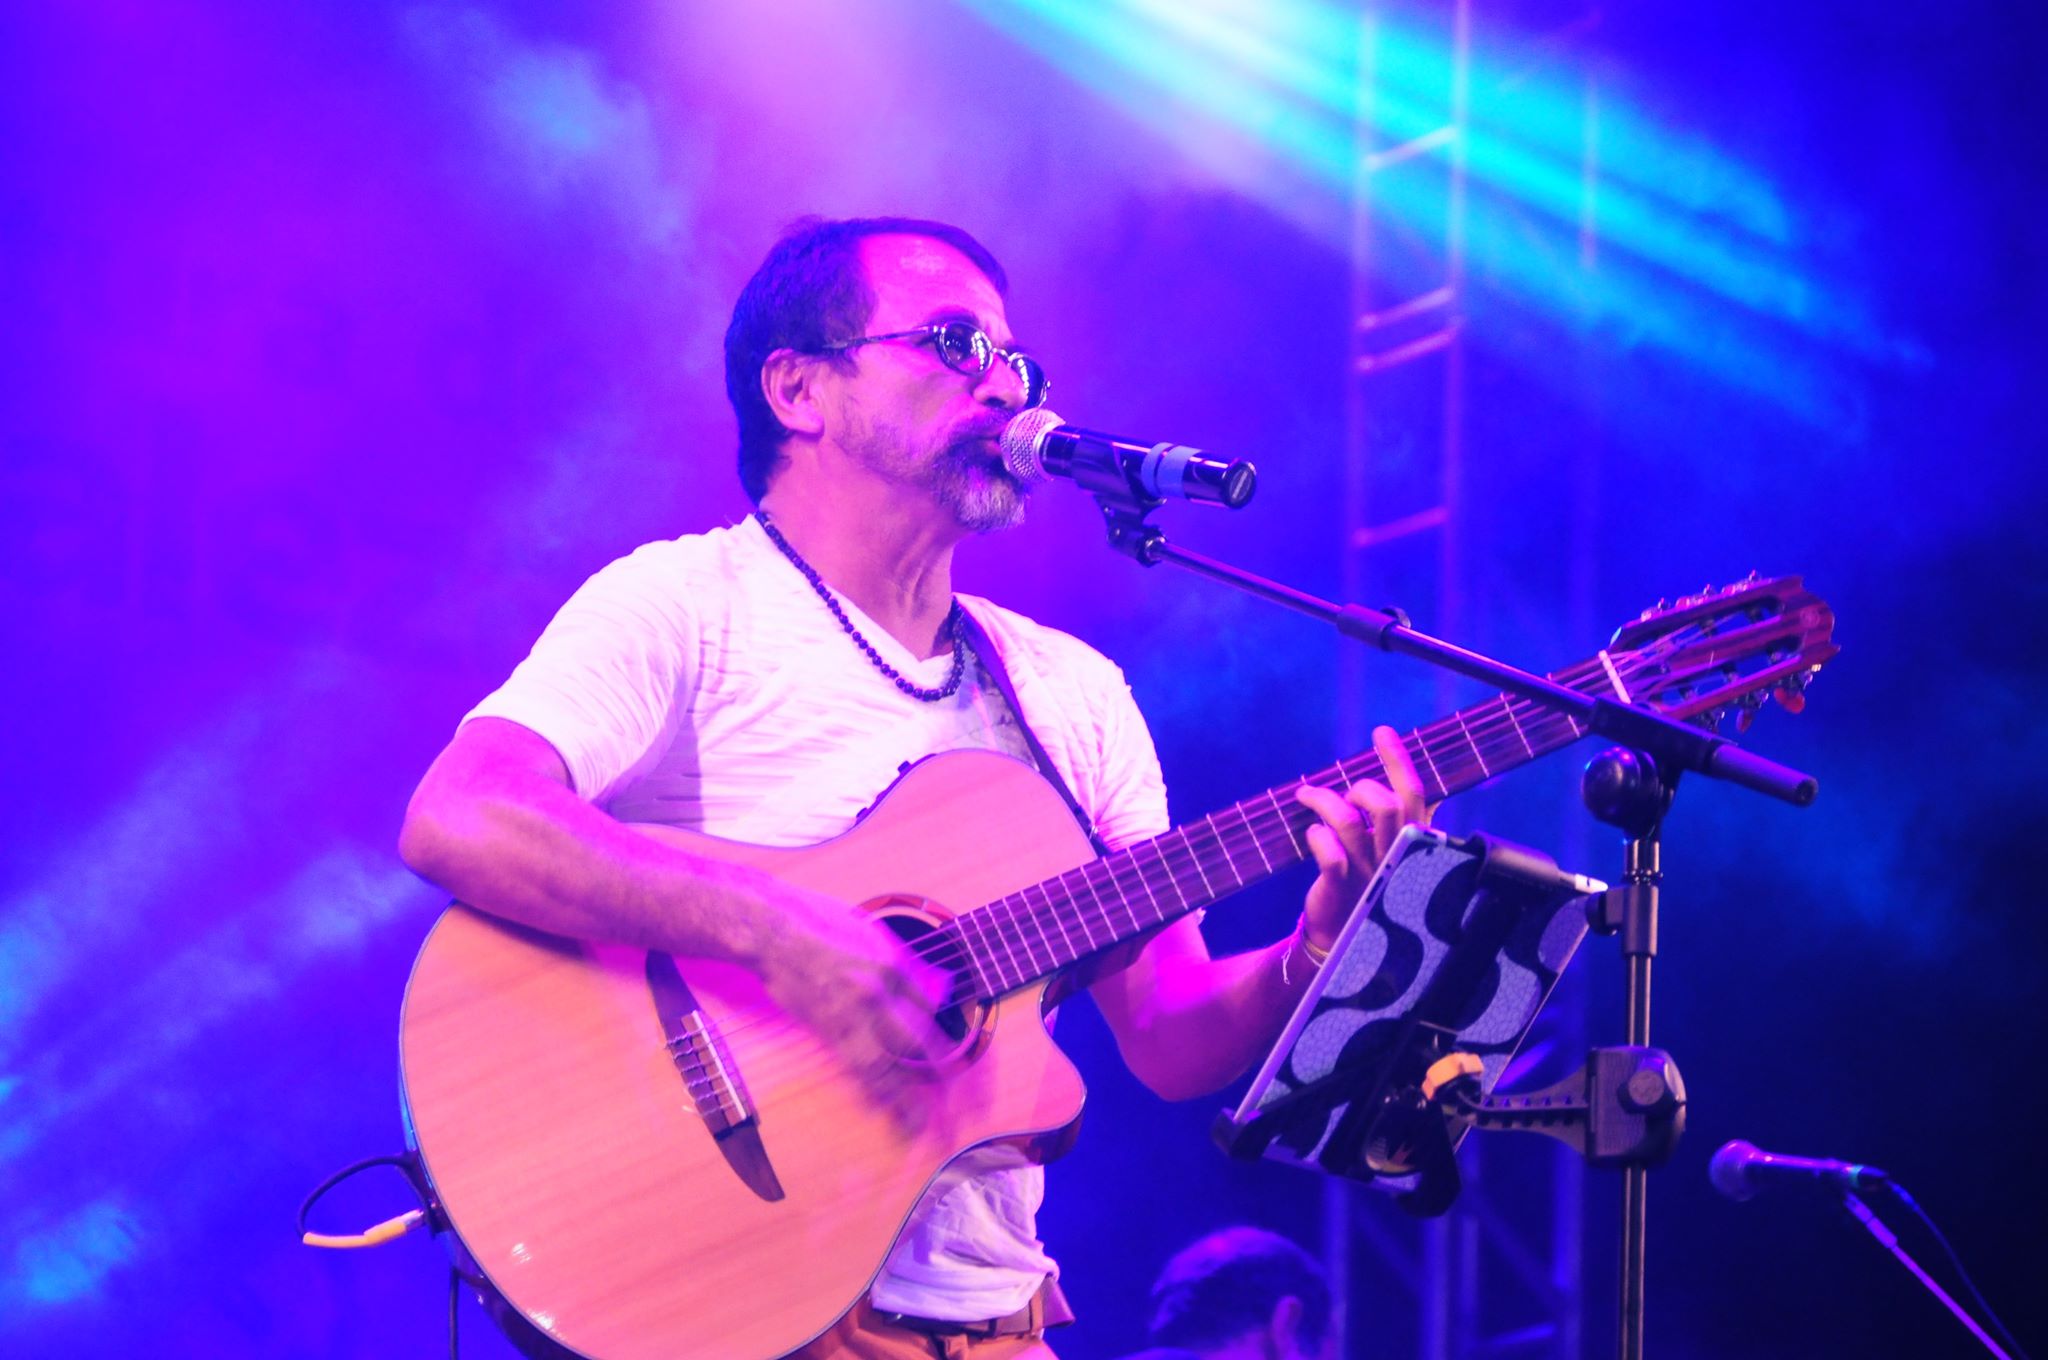 O multiartista Pingo de Fortaleza se apresenta tocando seu violão